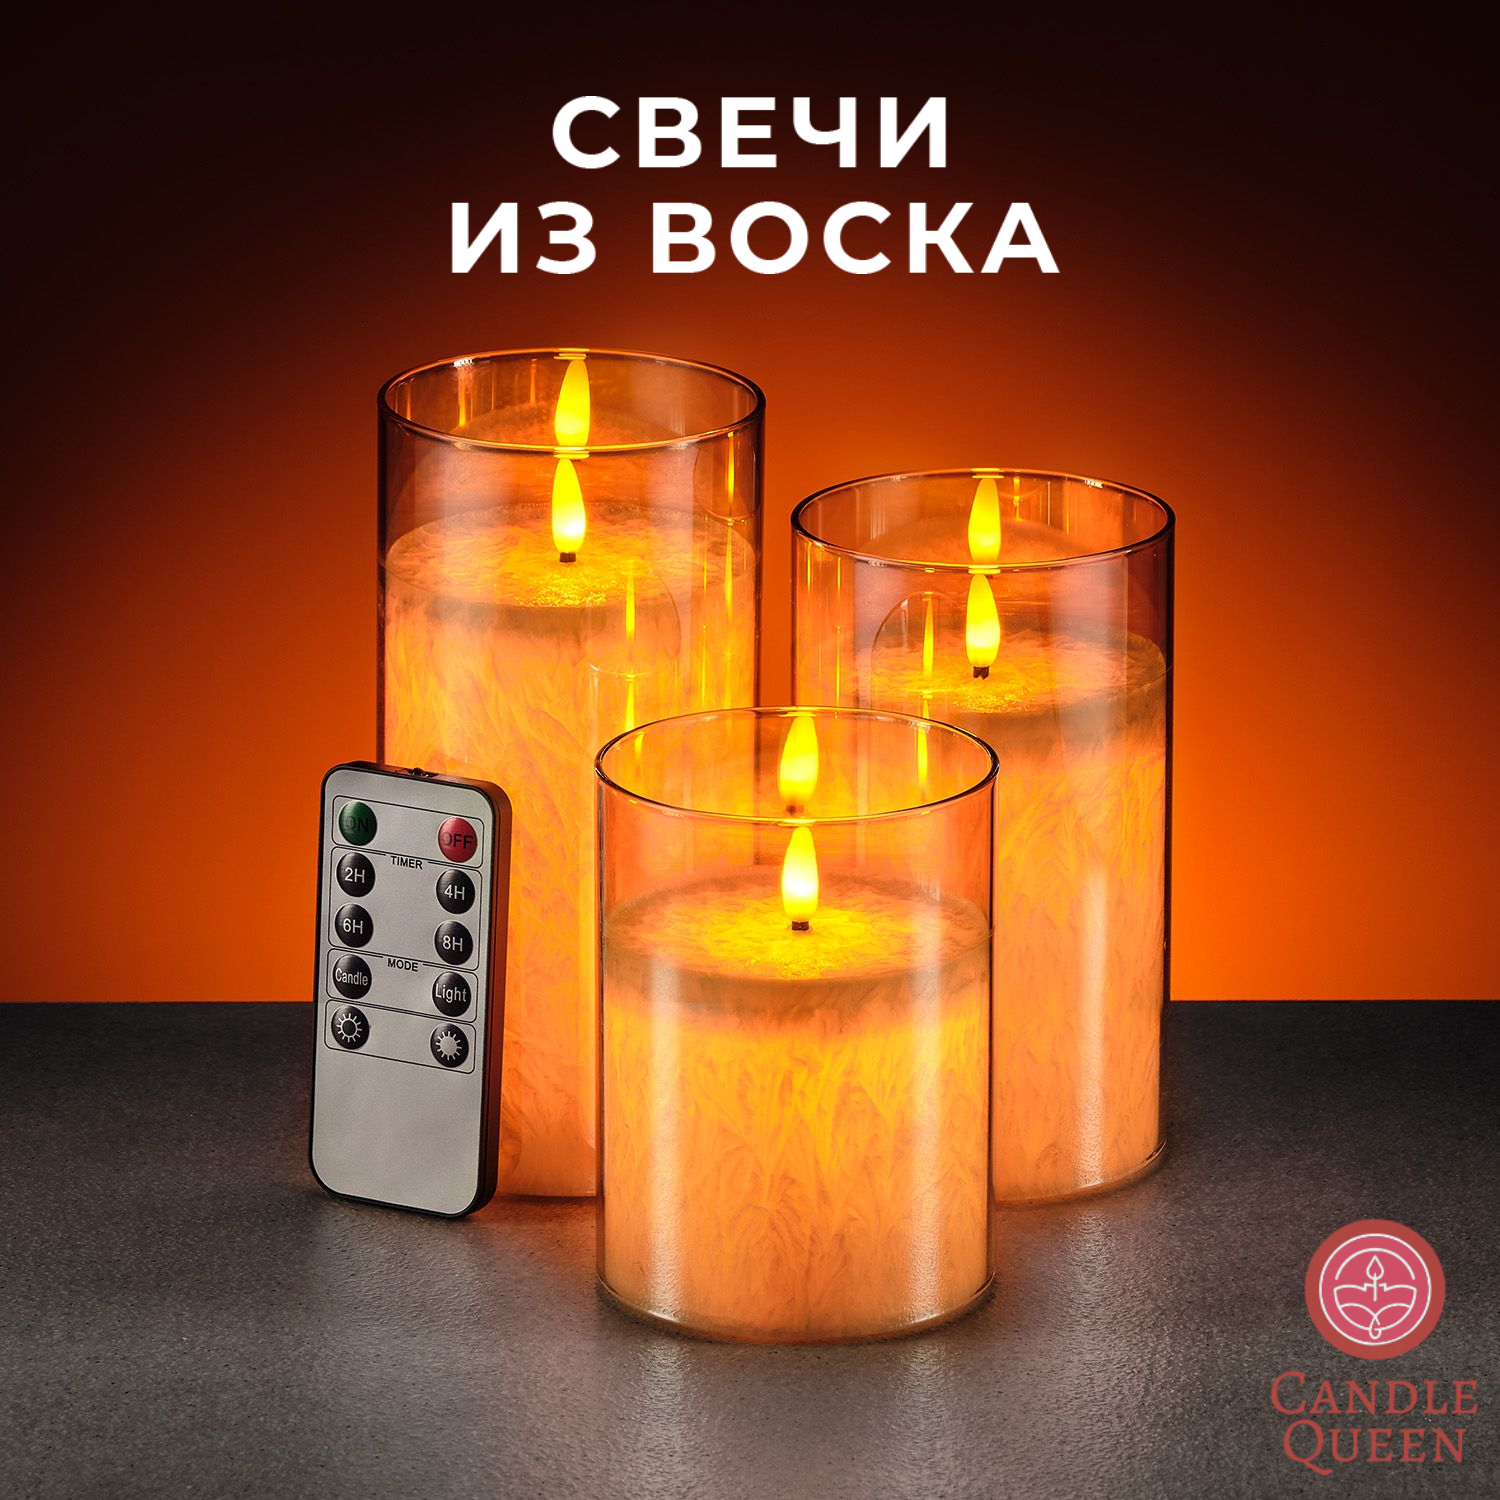 Светодиодные интерьерные электро свечи из воска на батарейках CandleQueen RSG-Amber, 3 шт